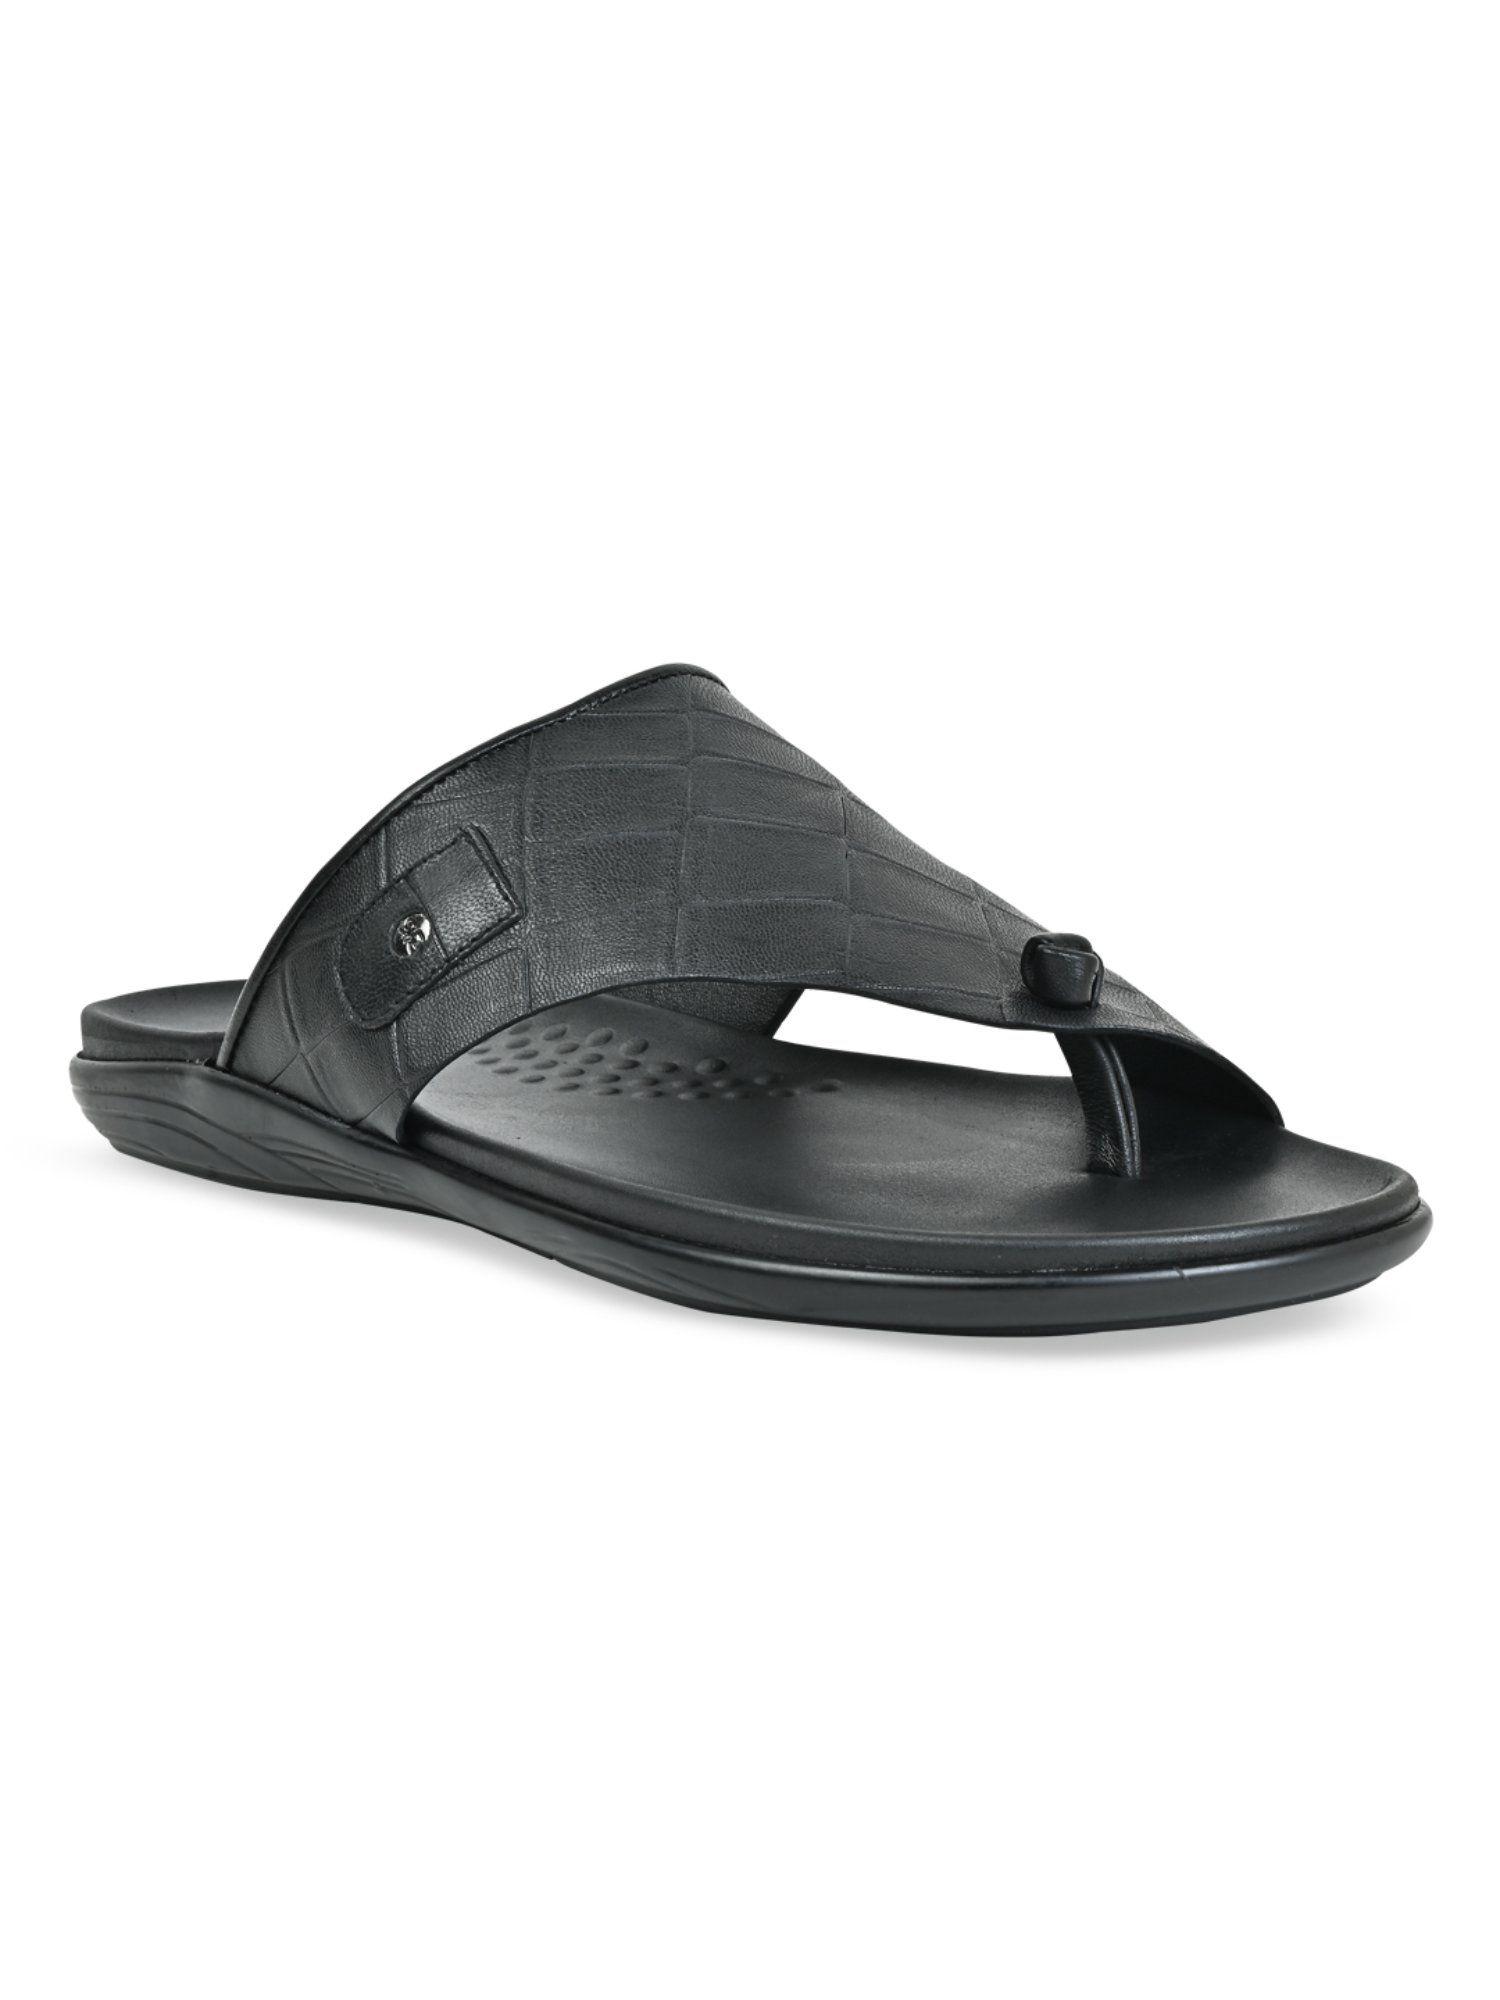 black-men-casual-croco-print-sandals